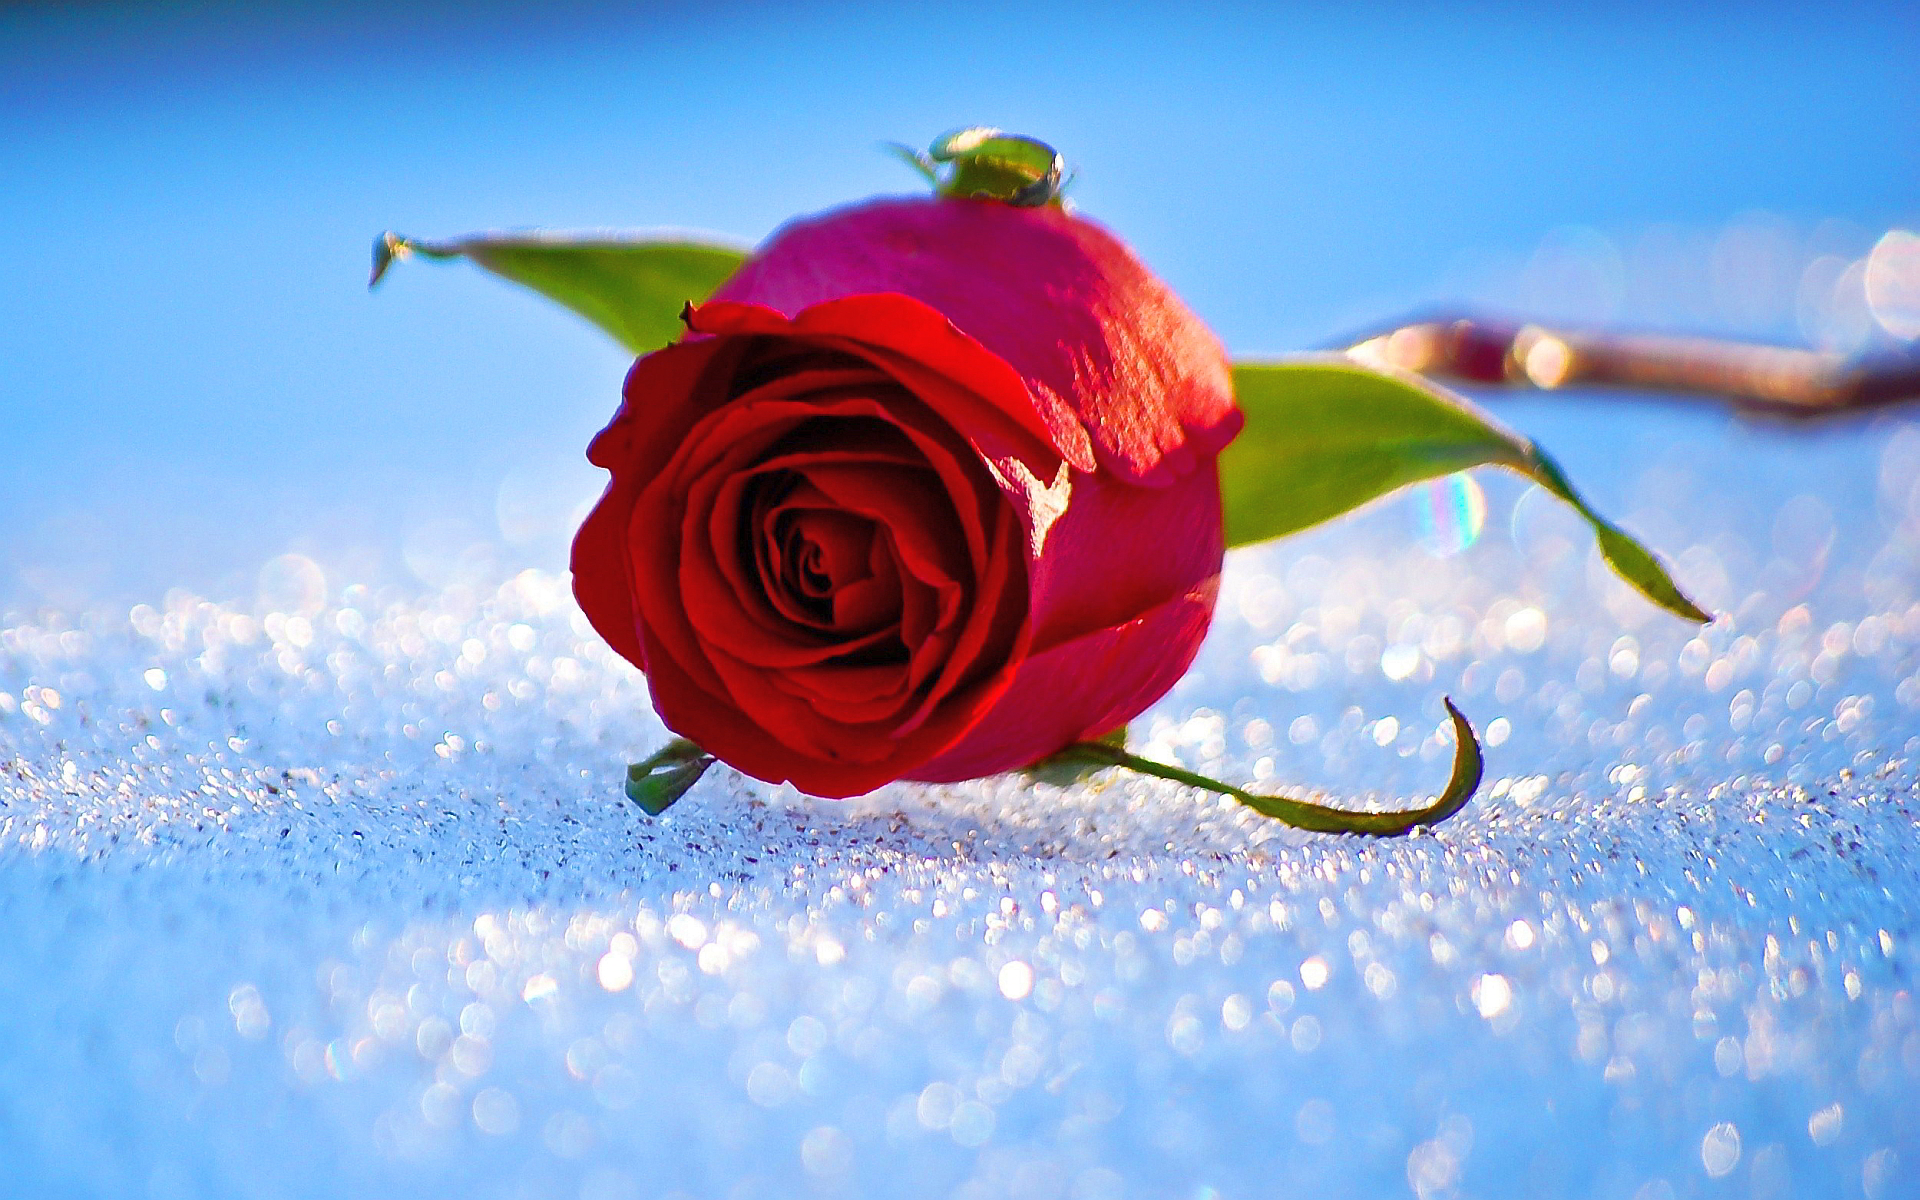 Rose In Snow - HD Wallpaper 